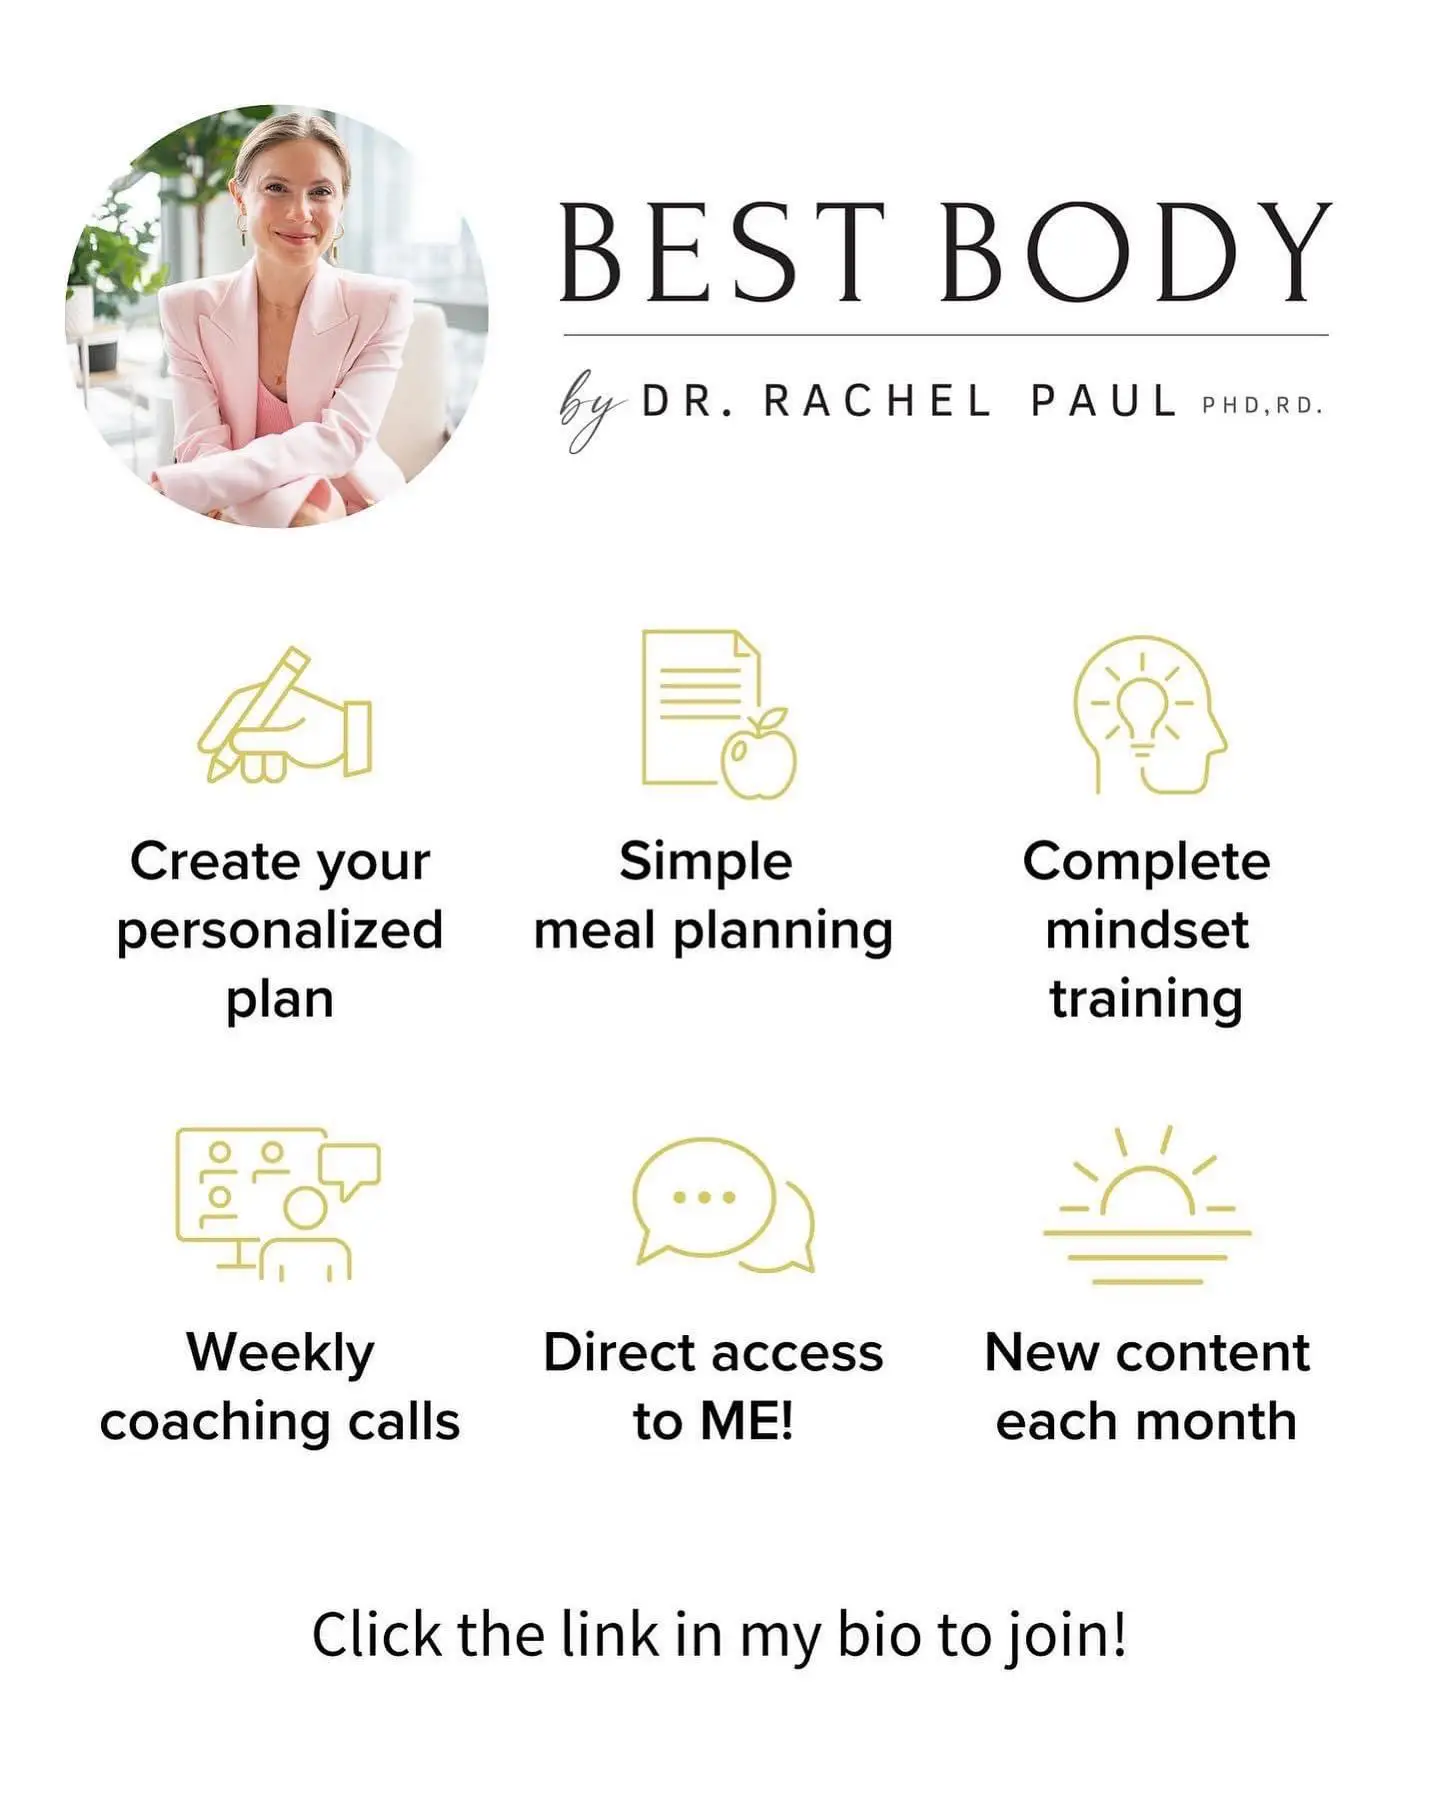 Best Body by Dr. Rachel Paul